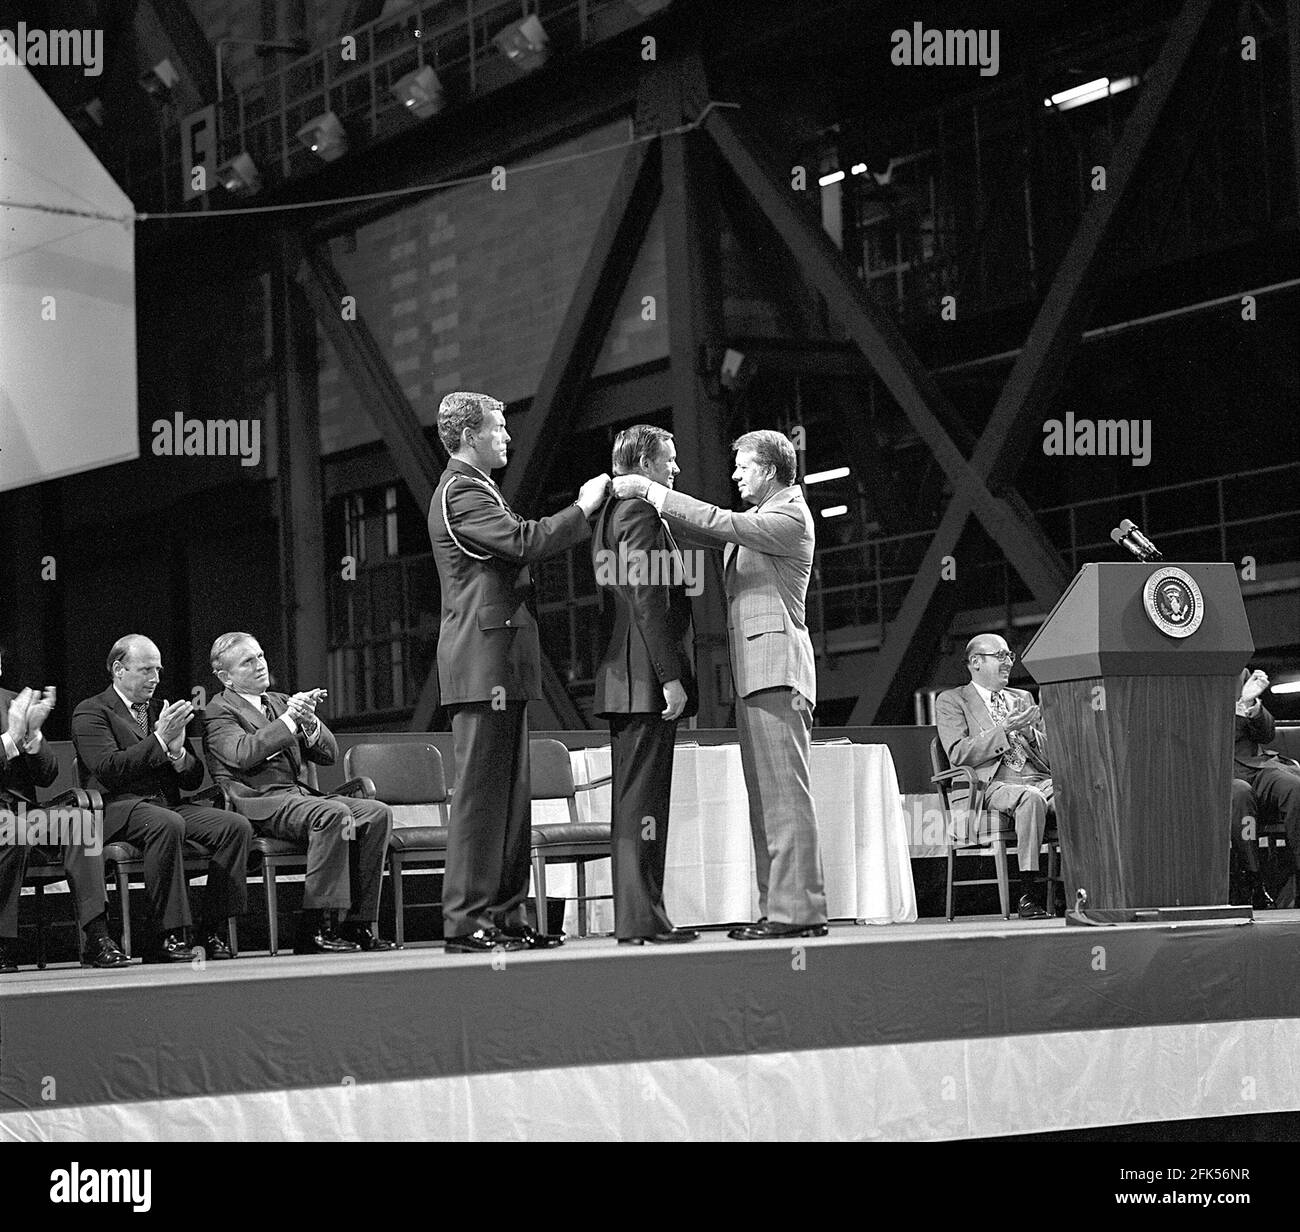 Cape Canaveral, FL - (DATEI) -- Astronaut Neil A. Armstrong erhält am 1. Oktober 1978 die erste Ehrenmedaille des Kongressraums vom US-Präsidenten Jimmy Carter, unterstützt von Kapitän Robert Peterson. Armstrong, einer von sechs Astronauten, die die Medaille bei Zeremonien im Vehicle Assembly Building (VAB) überreichten, wurde für seine Leistungen während der Mission Gemini 8 und der Mission Apollo 11 ausgezeichnet, als er als erster Mensch den Mond betrat.Quelle: NASA via CNP /MediaPunch Stockfoto